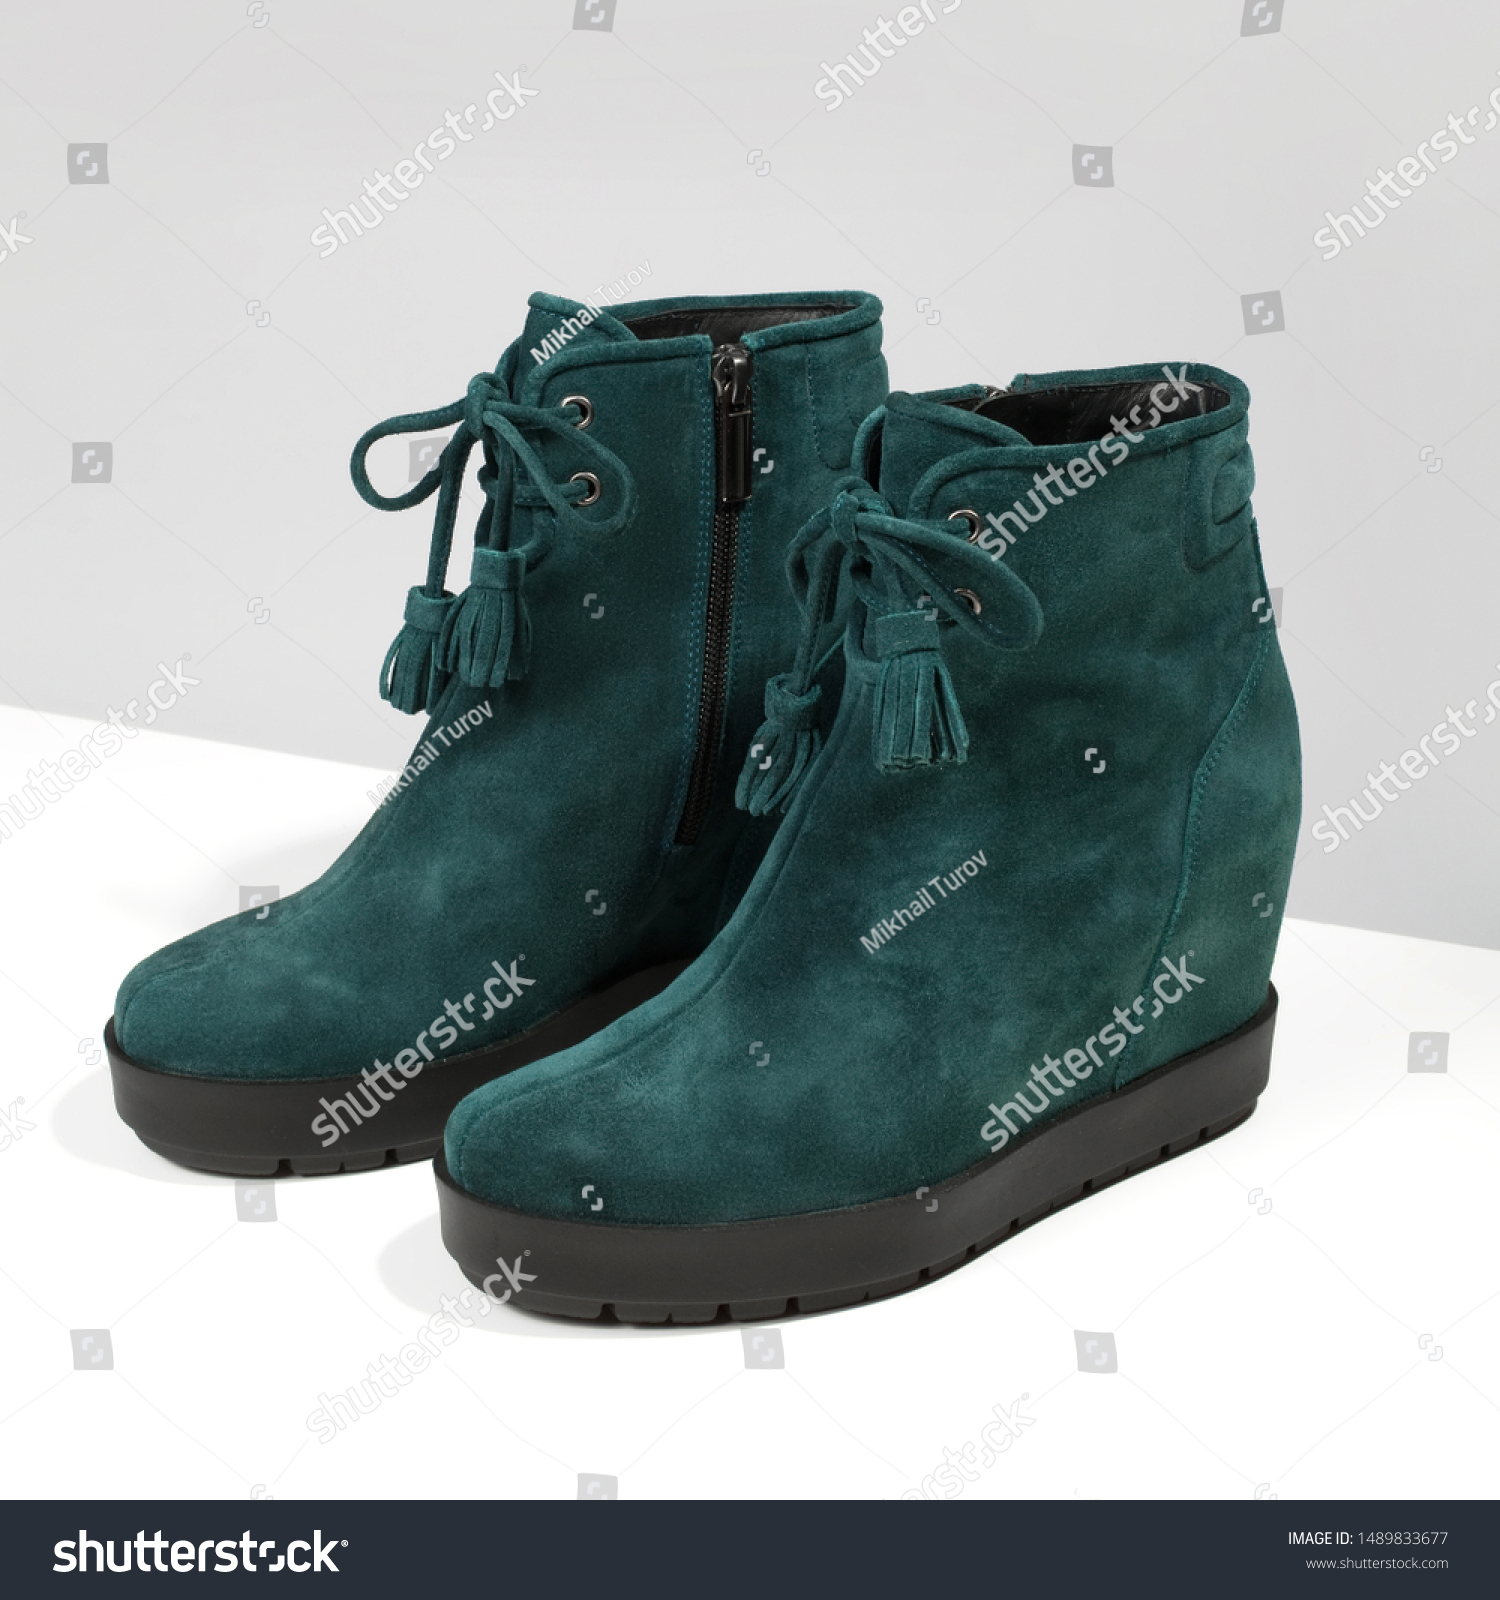 emerald green boots womens